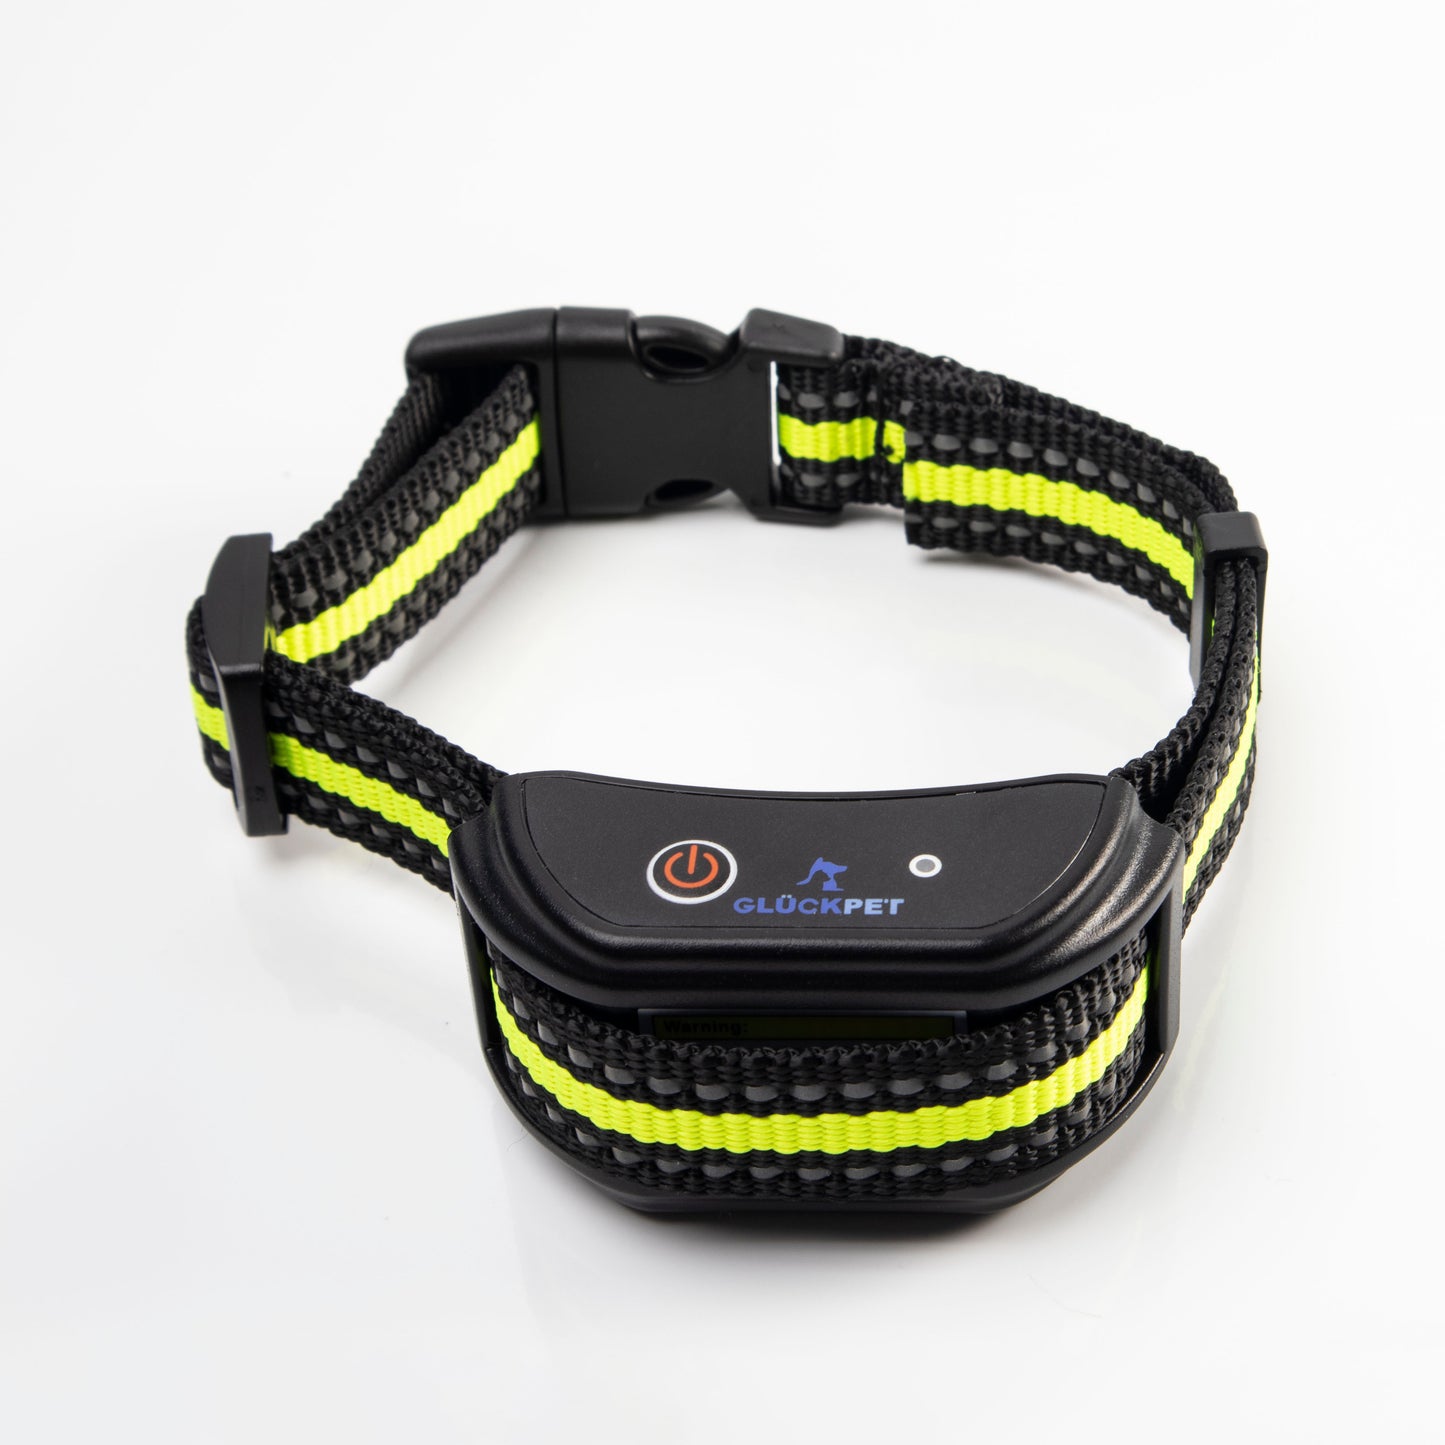 GLÜCKPET Dos Collares de Adiestramiento con Sonido y Vibración para Dos Perros de Más de 4 Kg